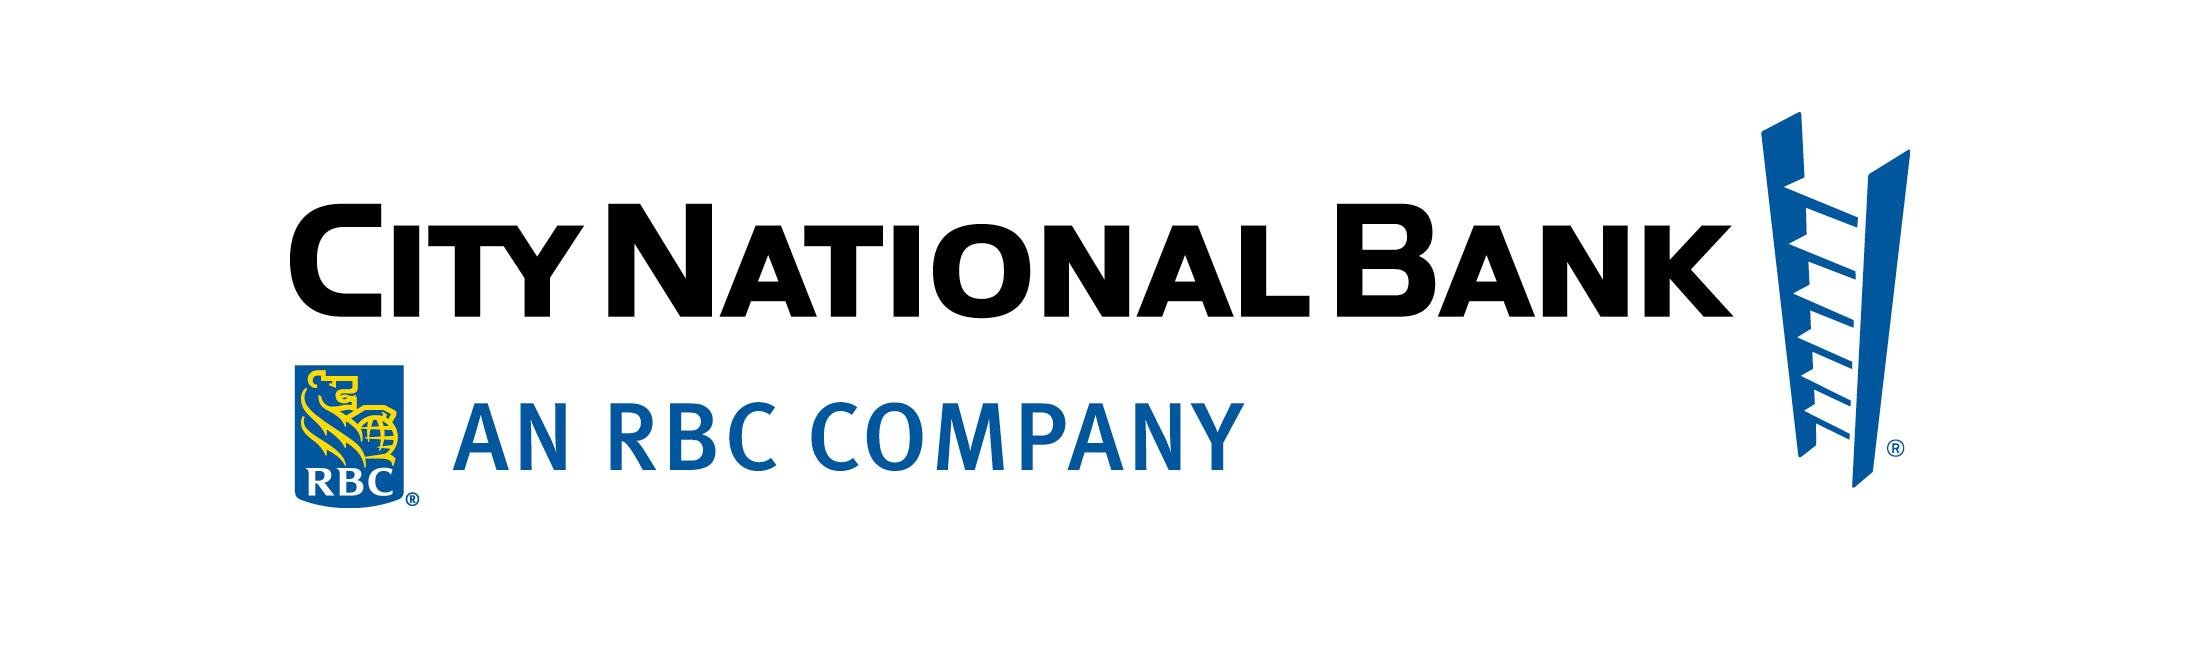 CNB logo.jpg